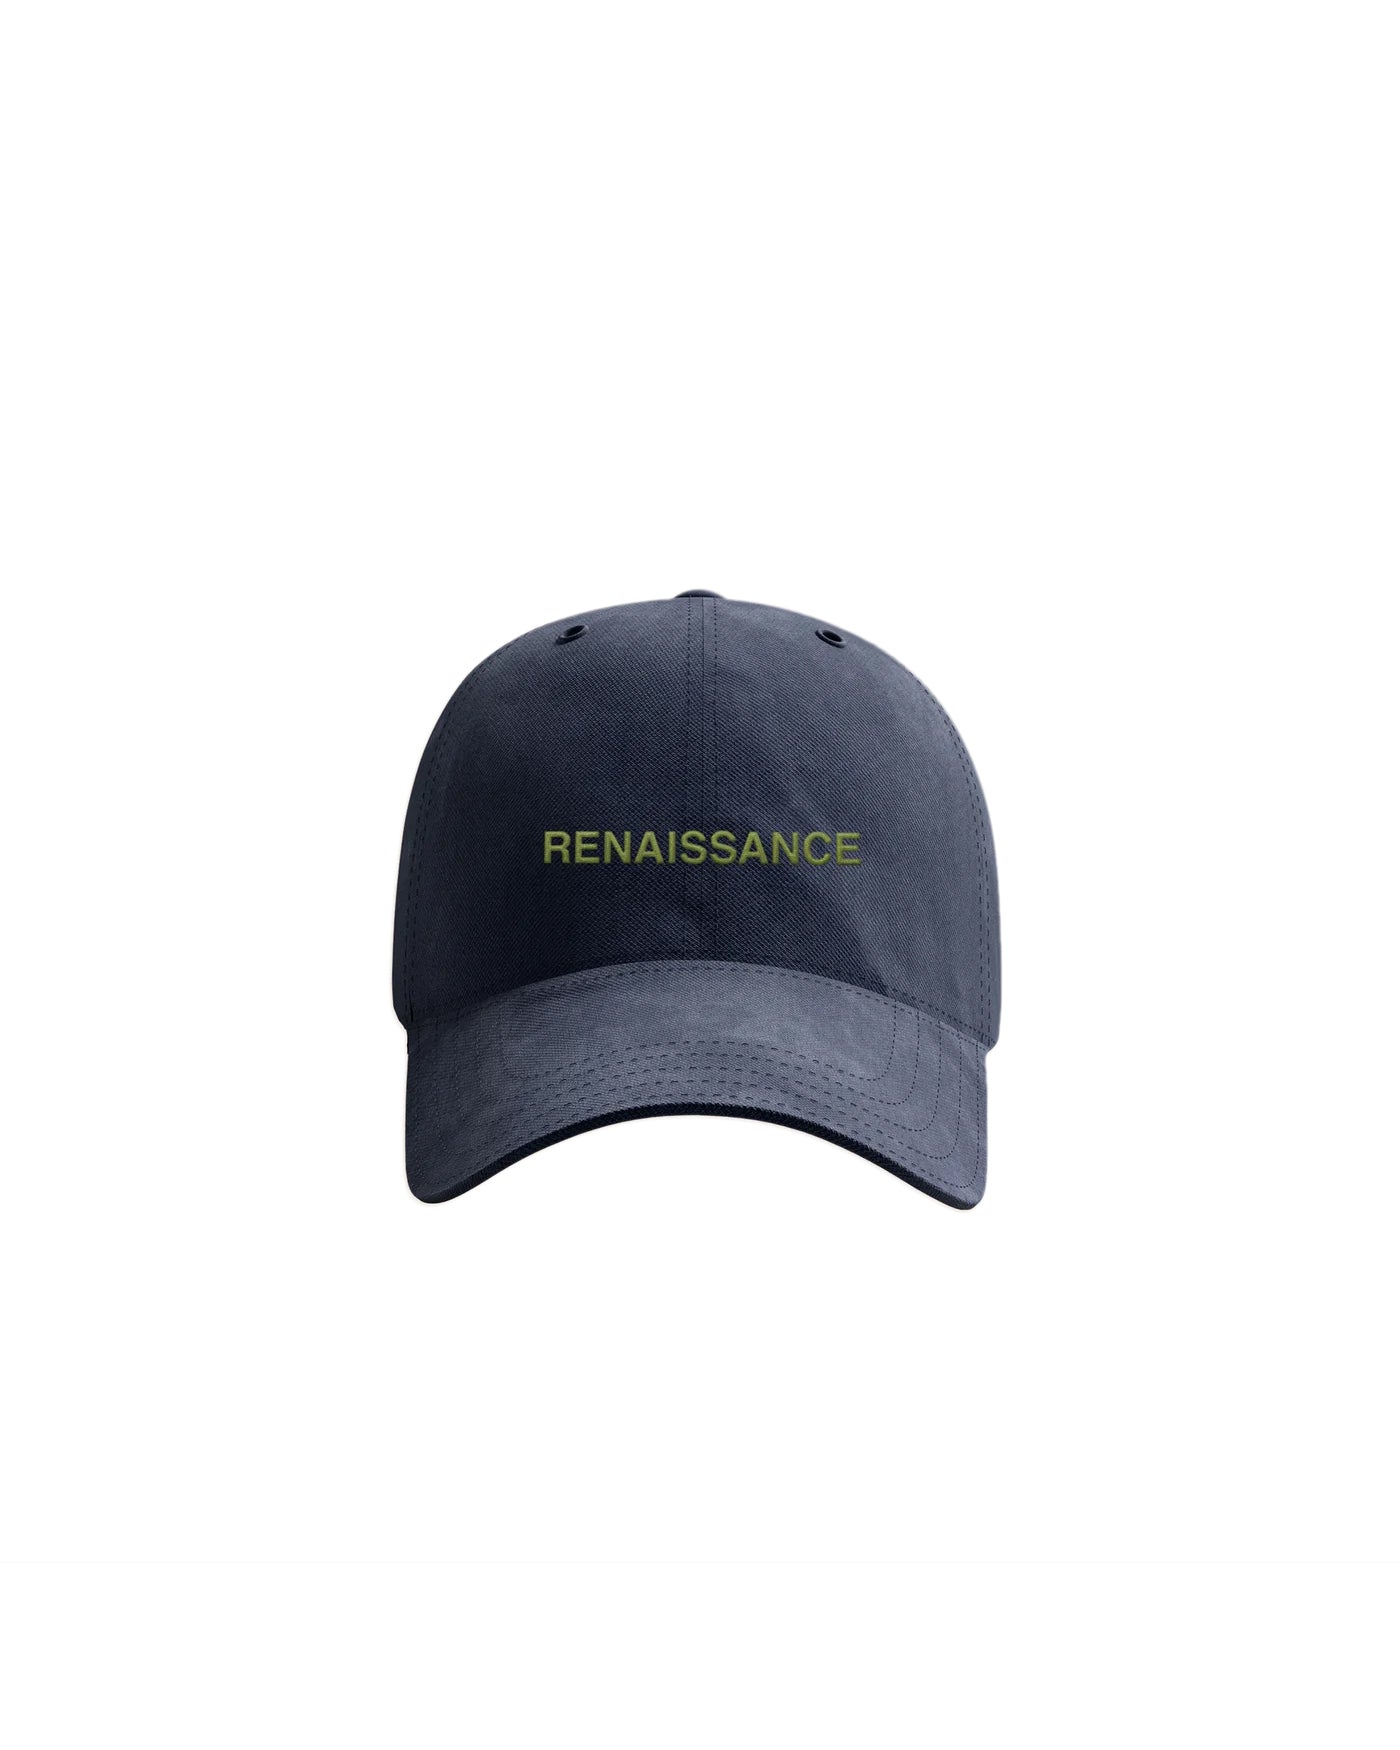 Renaissance Dad Hat